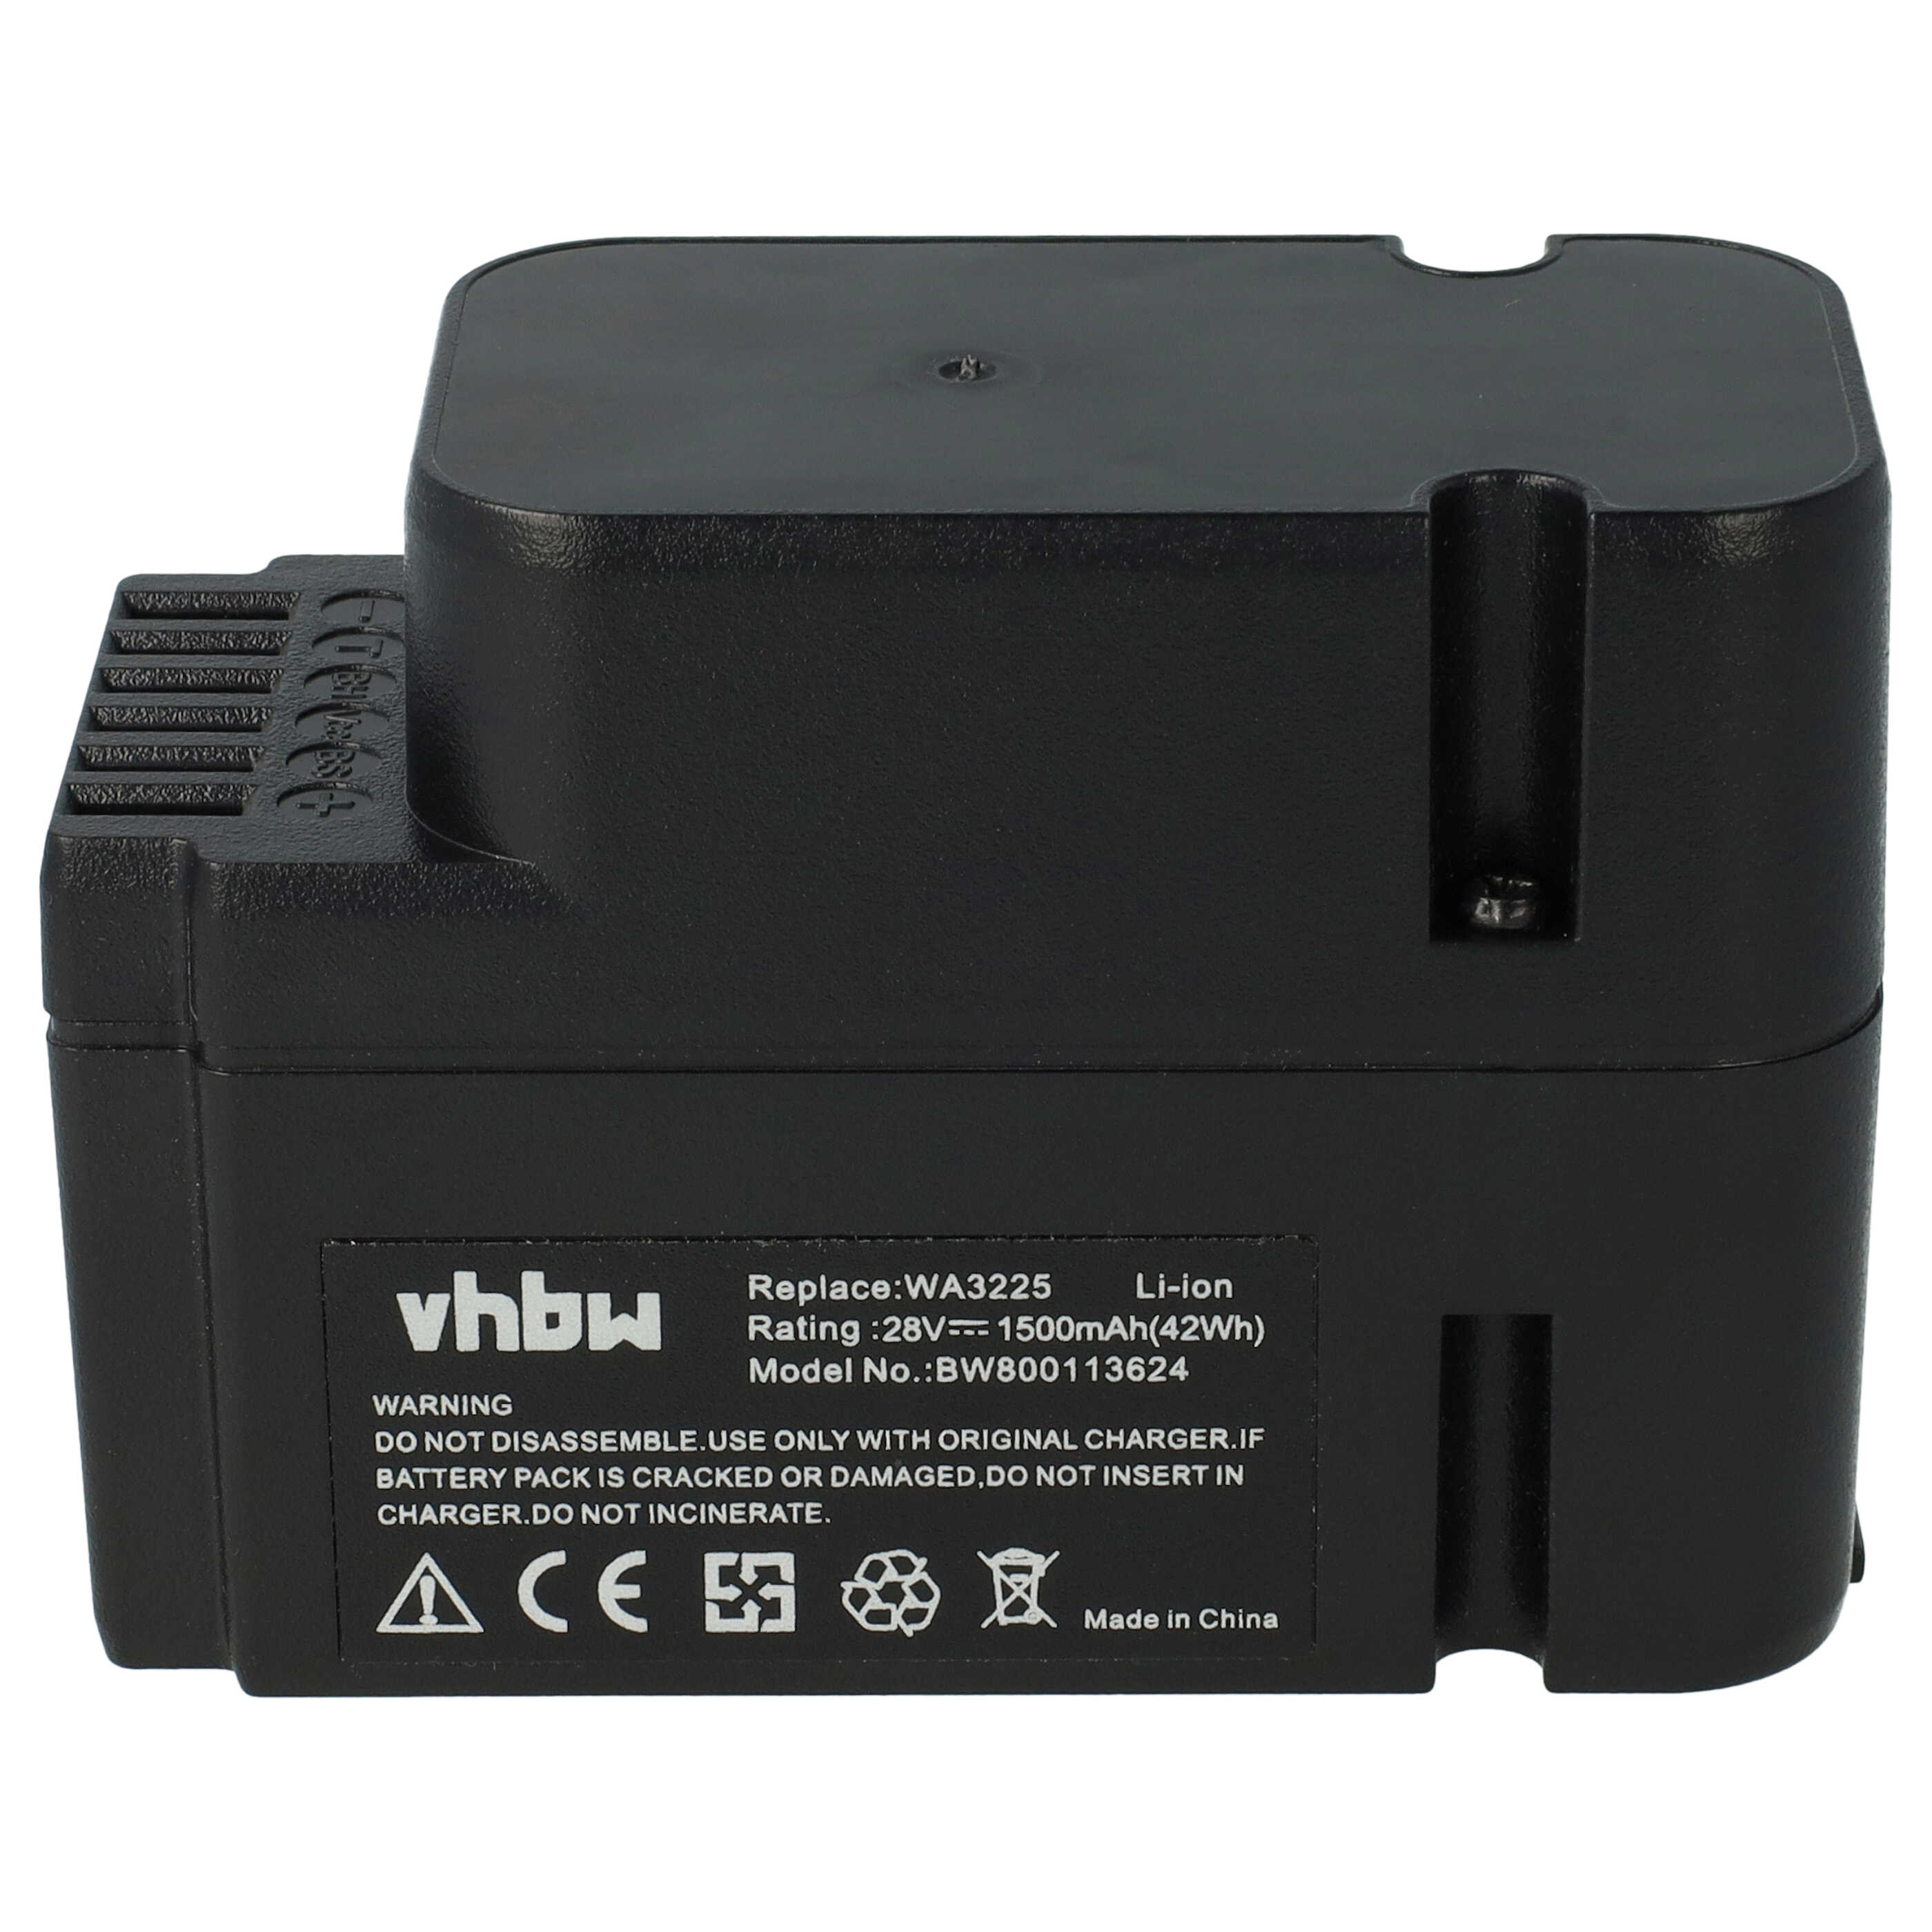 Batterie remplace Worx WA3226, WA3225, WA3565 pour outil de jardinage - 1500mAh 28V Li-ion